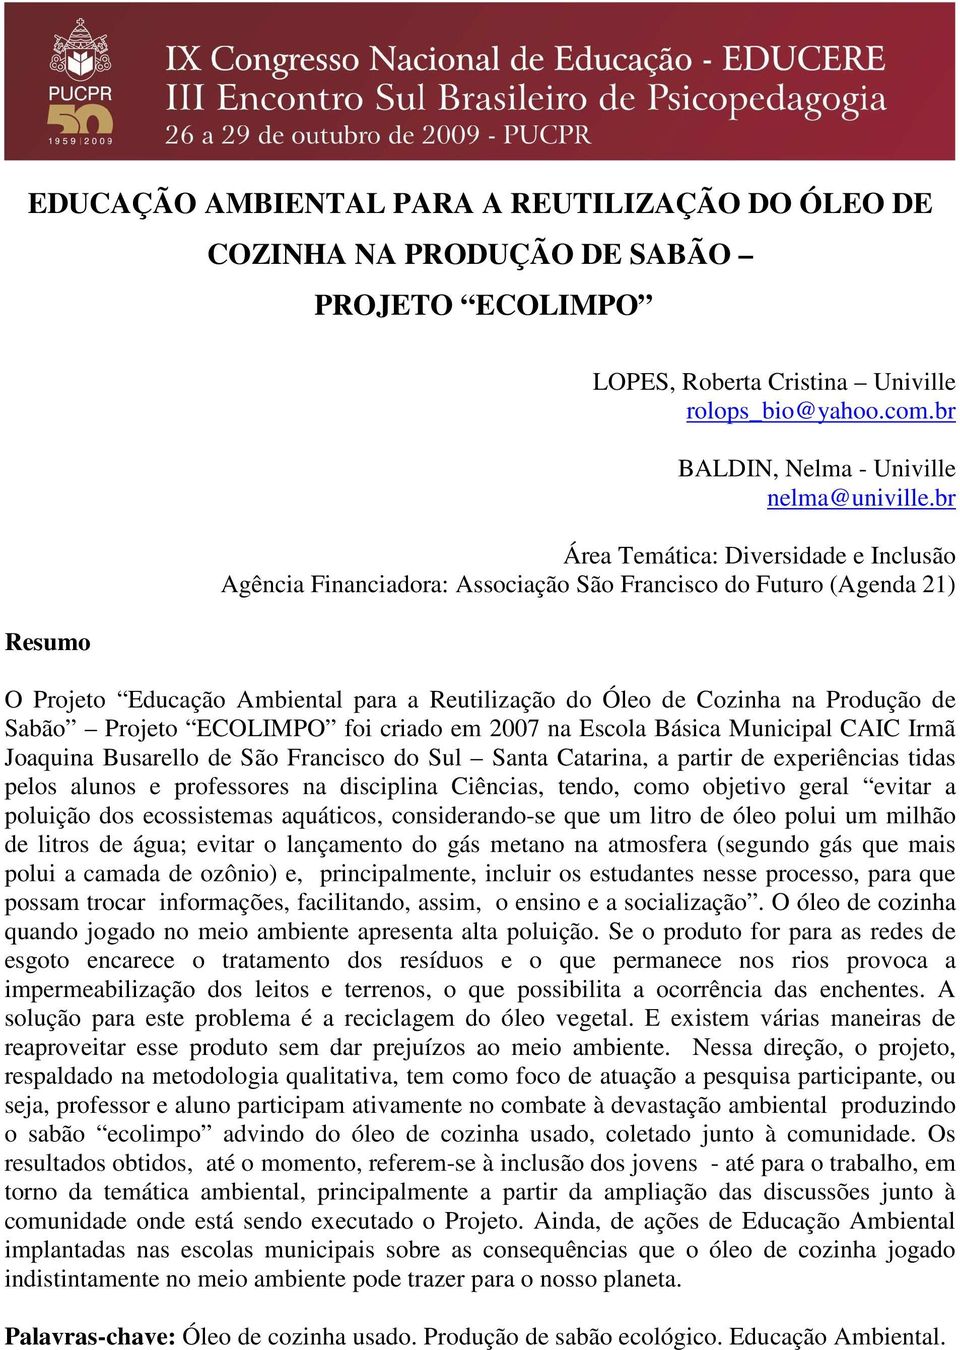 Projeto ECOLIMPO foi criado em 2007 na Escola Básica Municipal CAIC Irmã Joaquina Busarello de São Francisco do Sul Santa Catarina, a partir de experiências tidas pelos alunos e professores na